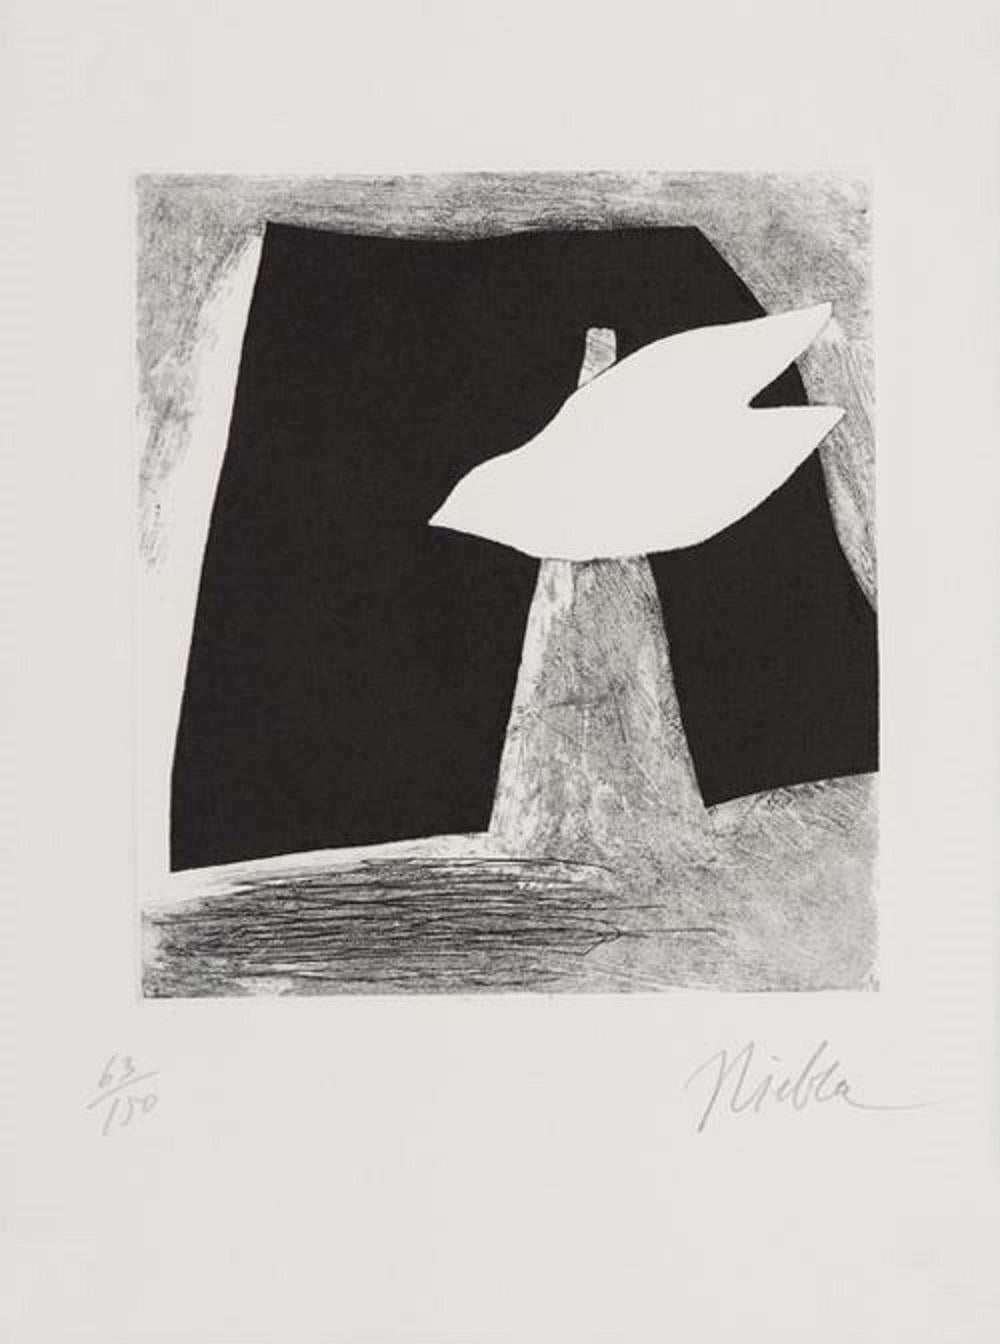 José Niebla Spanischer Künstler Original Hand Signiert Siebdruck 1996 n3